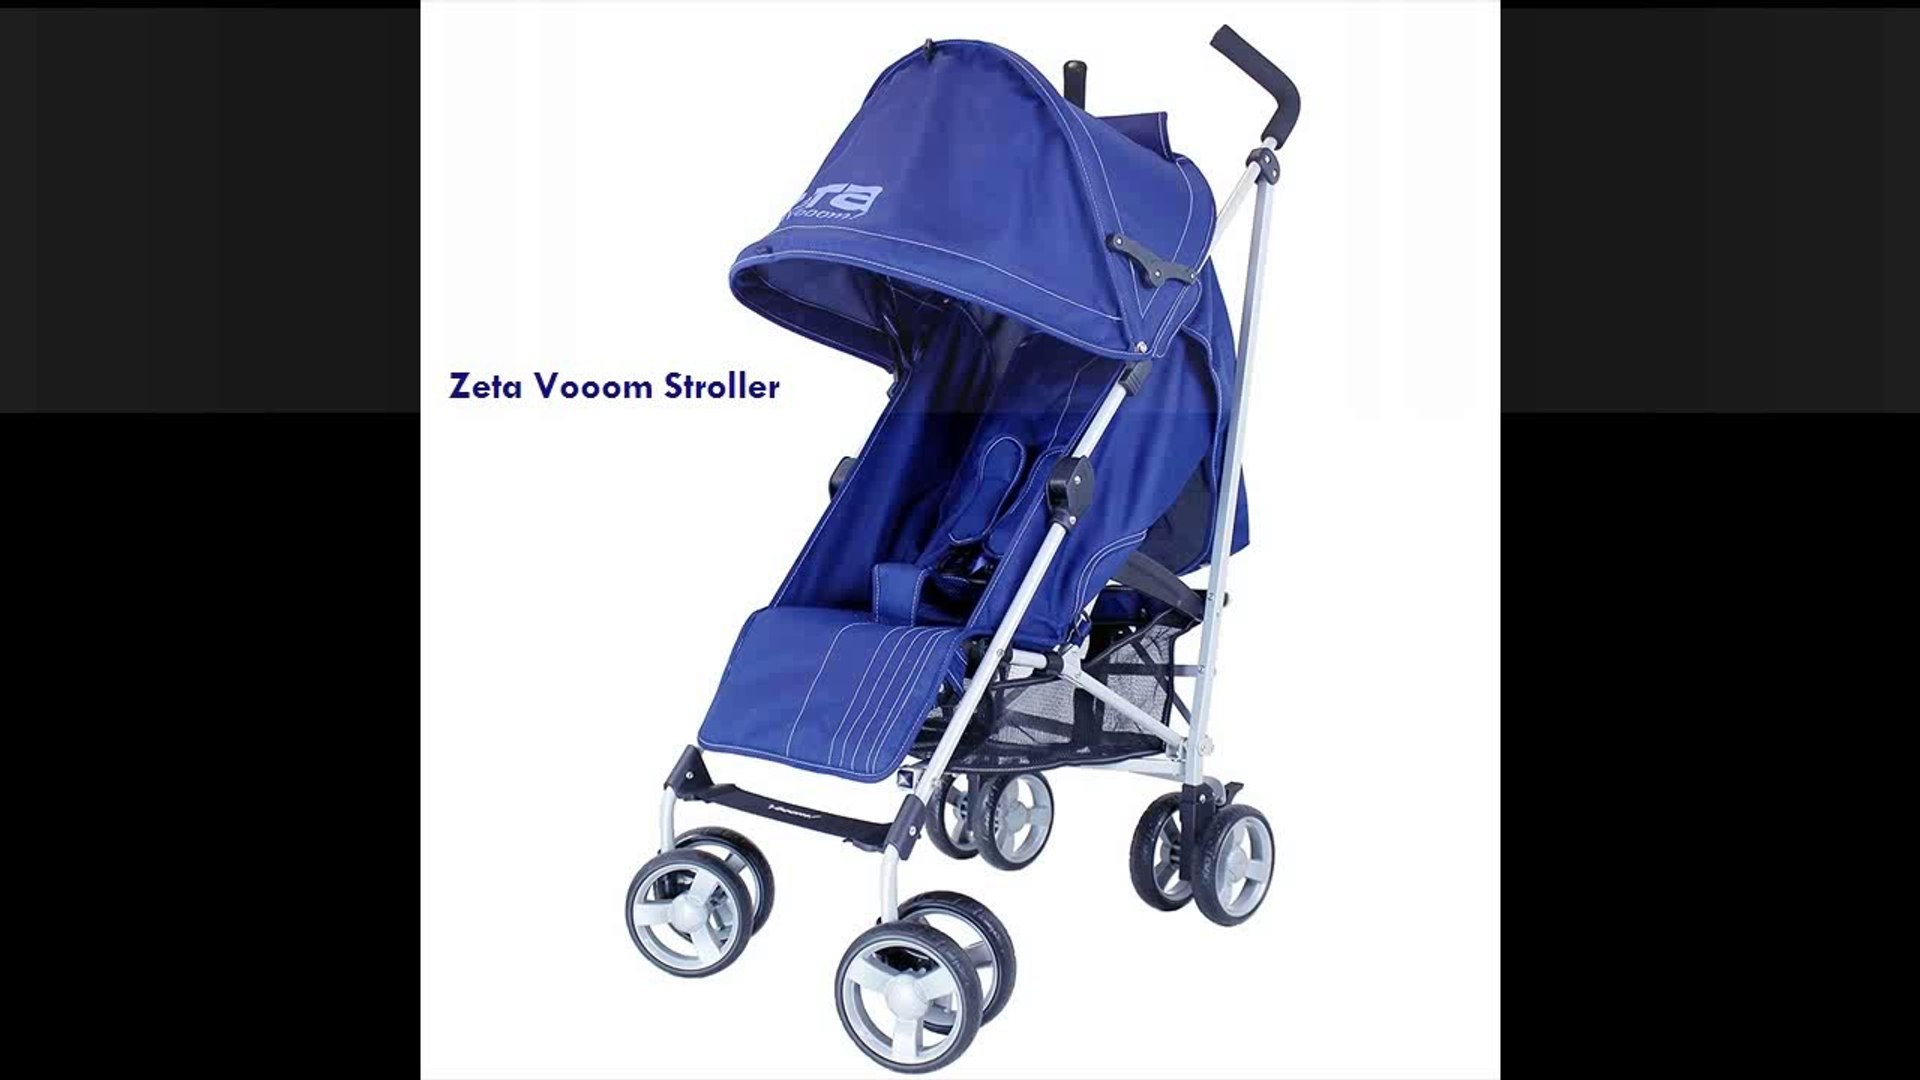 zeta vooom double stroller